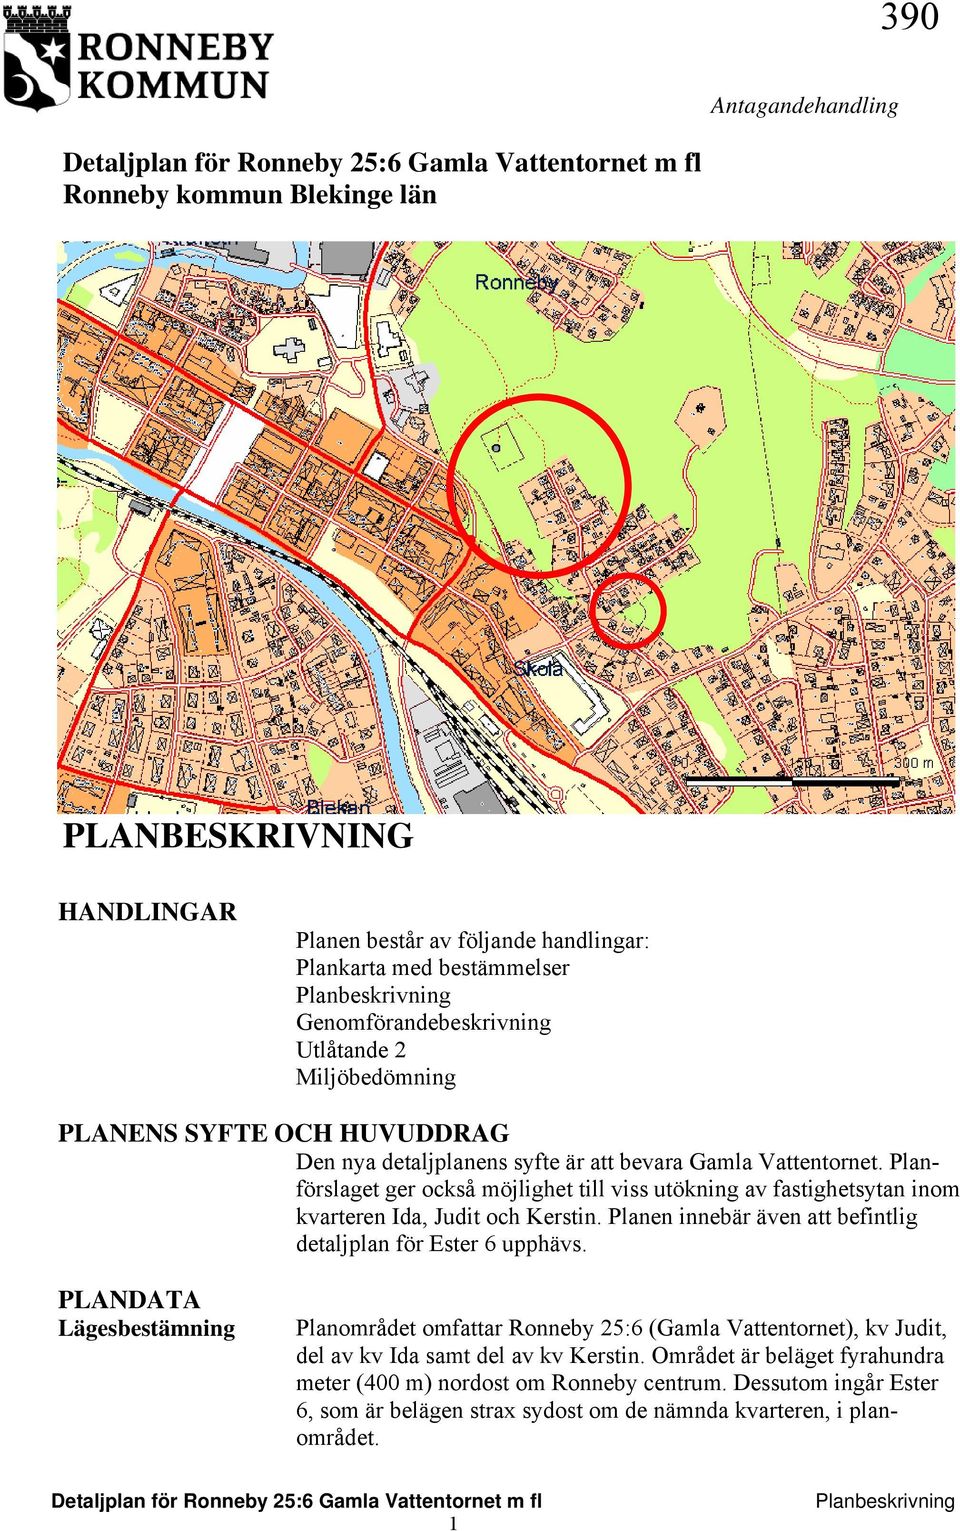 Planförslaget ger också möjlighet till viss utökning av fastighetsytan inom kvarteren Ida, Judit och Kerstin. Planen innebär även att befintlig detaljplan för Ester 6 upphävs.